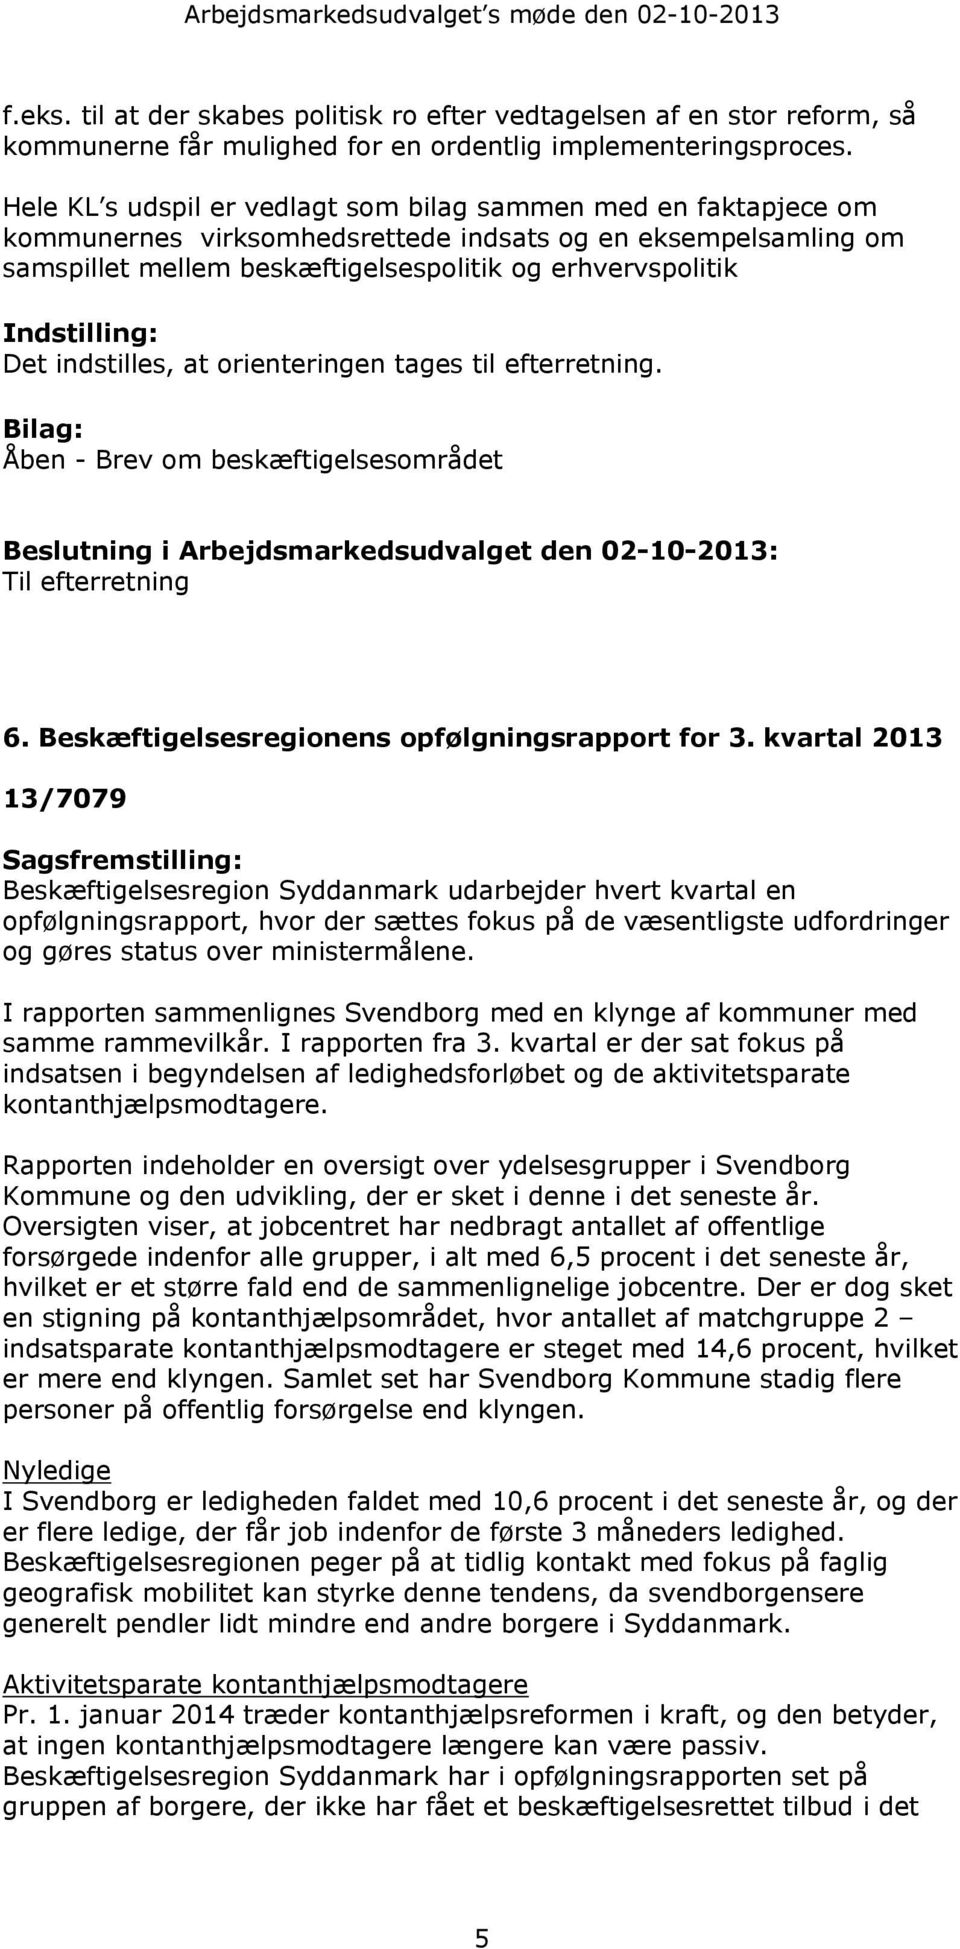 Indstilling: Det indstilles, at orienteringen tages til efterretning. Bilag: Åben - Brev om beskæftigelsesområdet Beslutning i Arbejdsmarkedsudvalget den 02-10-2013: Til efterretning 6.